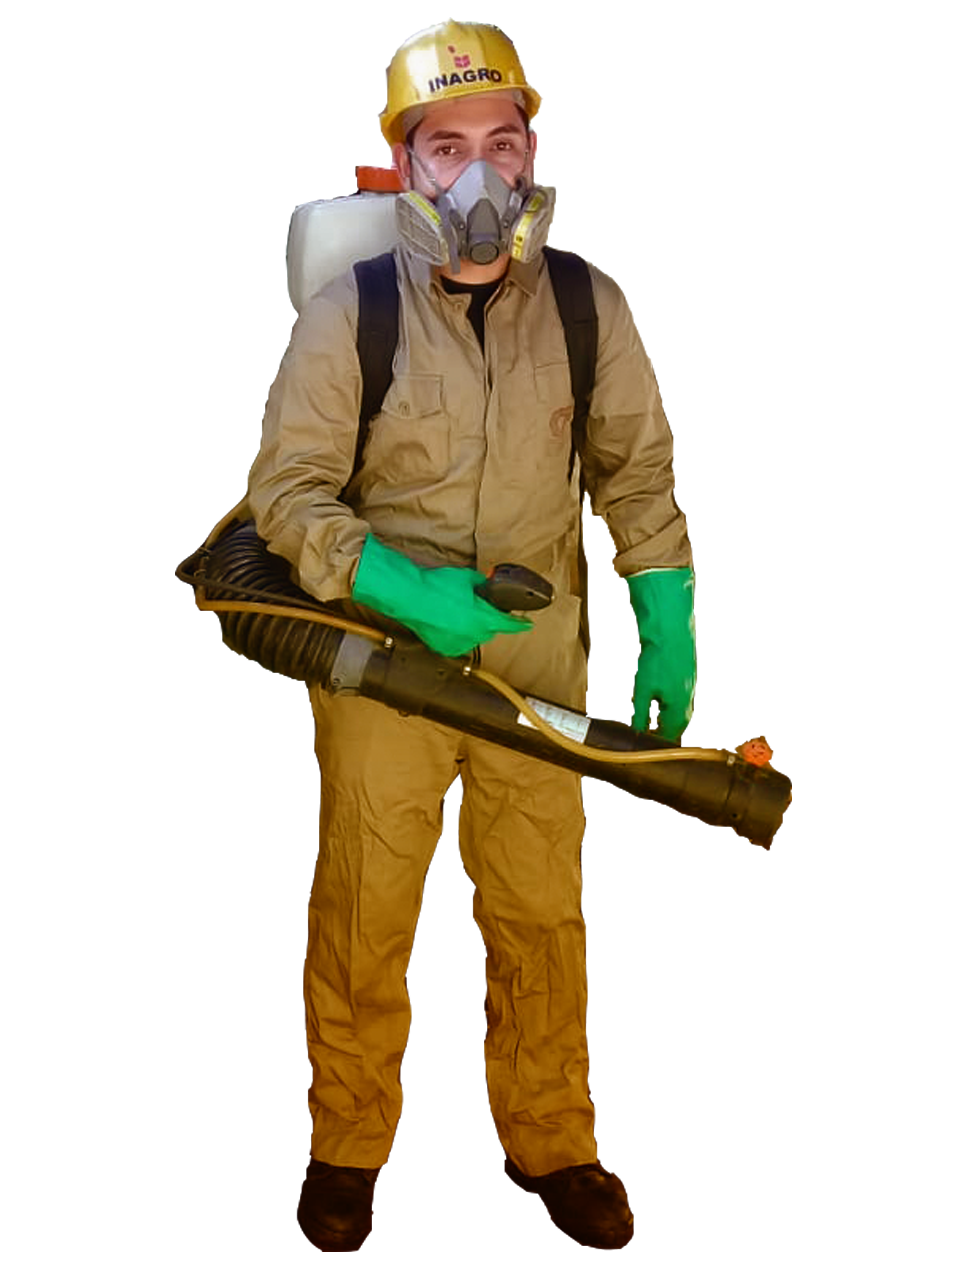 Servicios de control de plagas Paraguay, Eliminación de todo tipo de plagas, roedores, cucarachas, mosquitos, hormigas, termitas, chinches, arañas, avispas, pulgas, grillos y más.